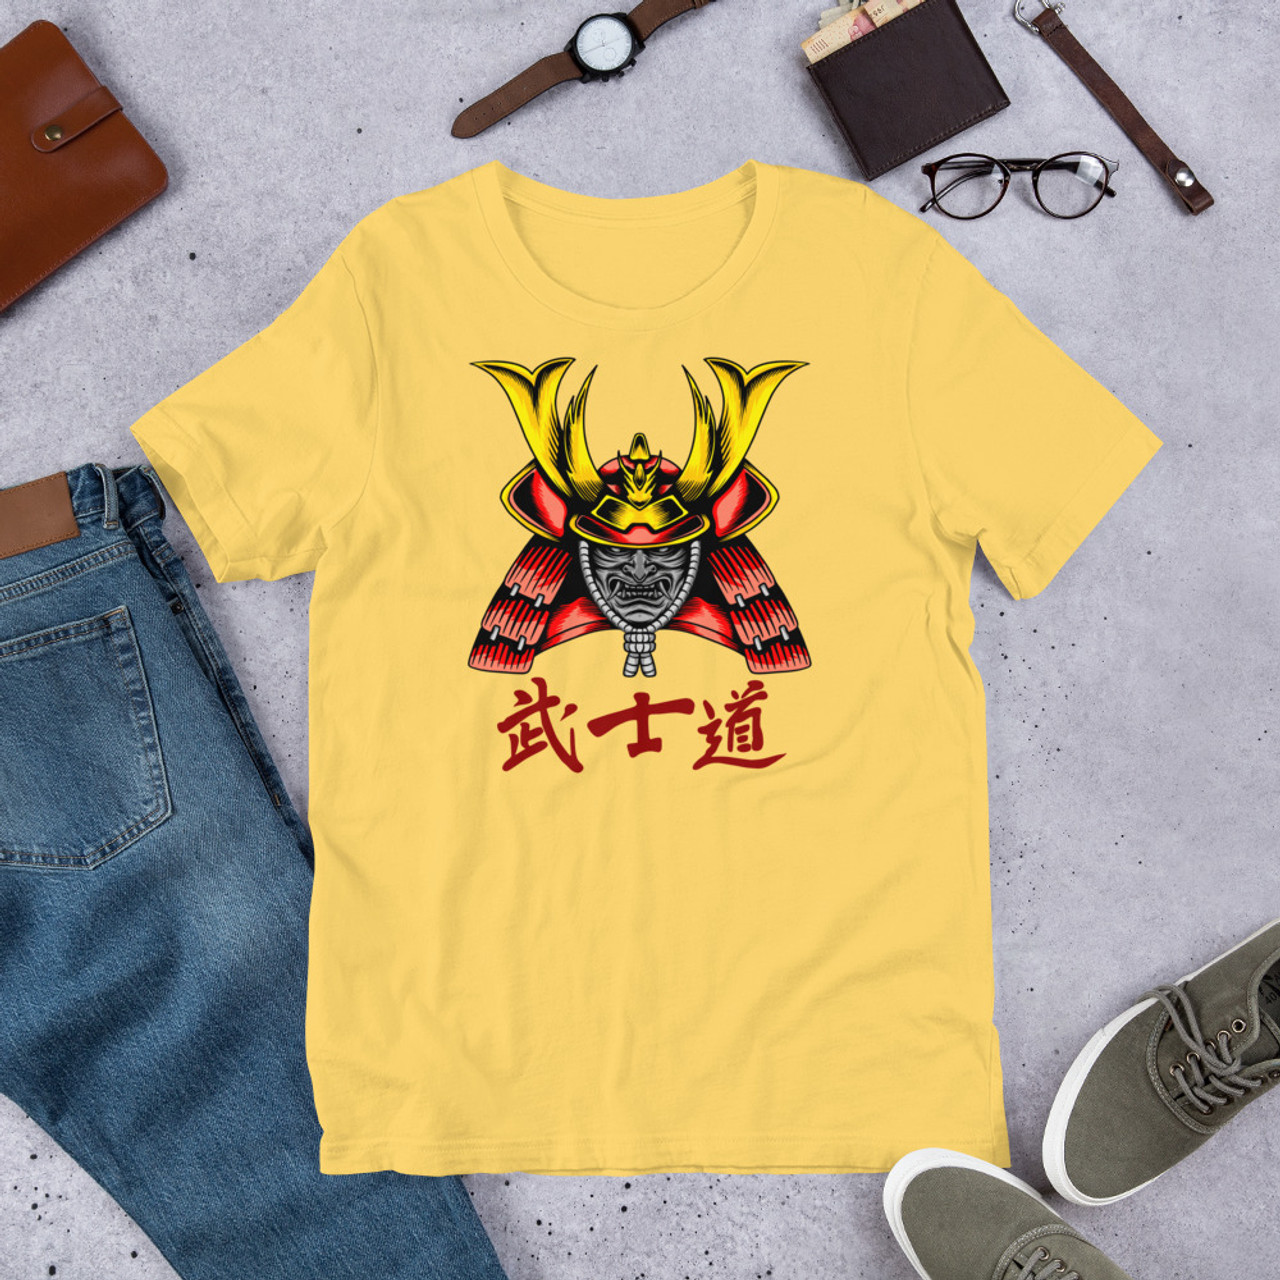 Yellow T-Shirt - Bella + Canvas 3001 Samurai 24